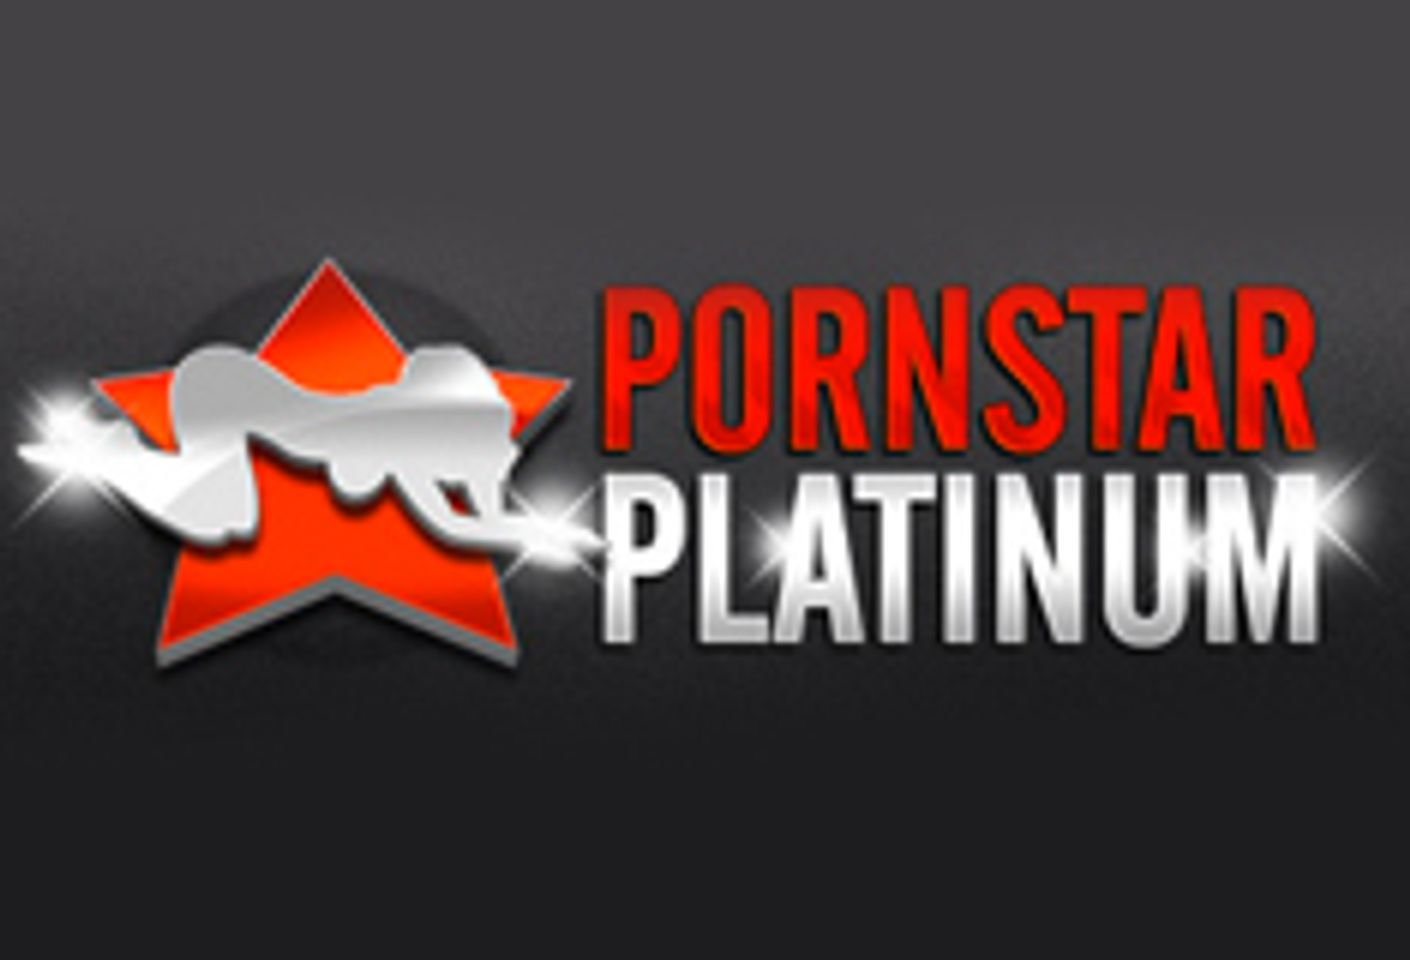 Pornstar Platinum Announces Three New Sites for 2015